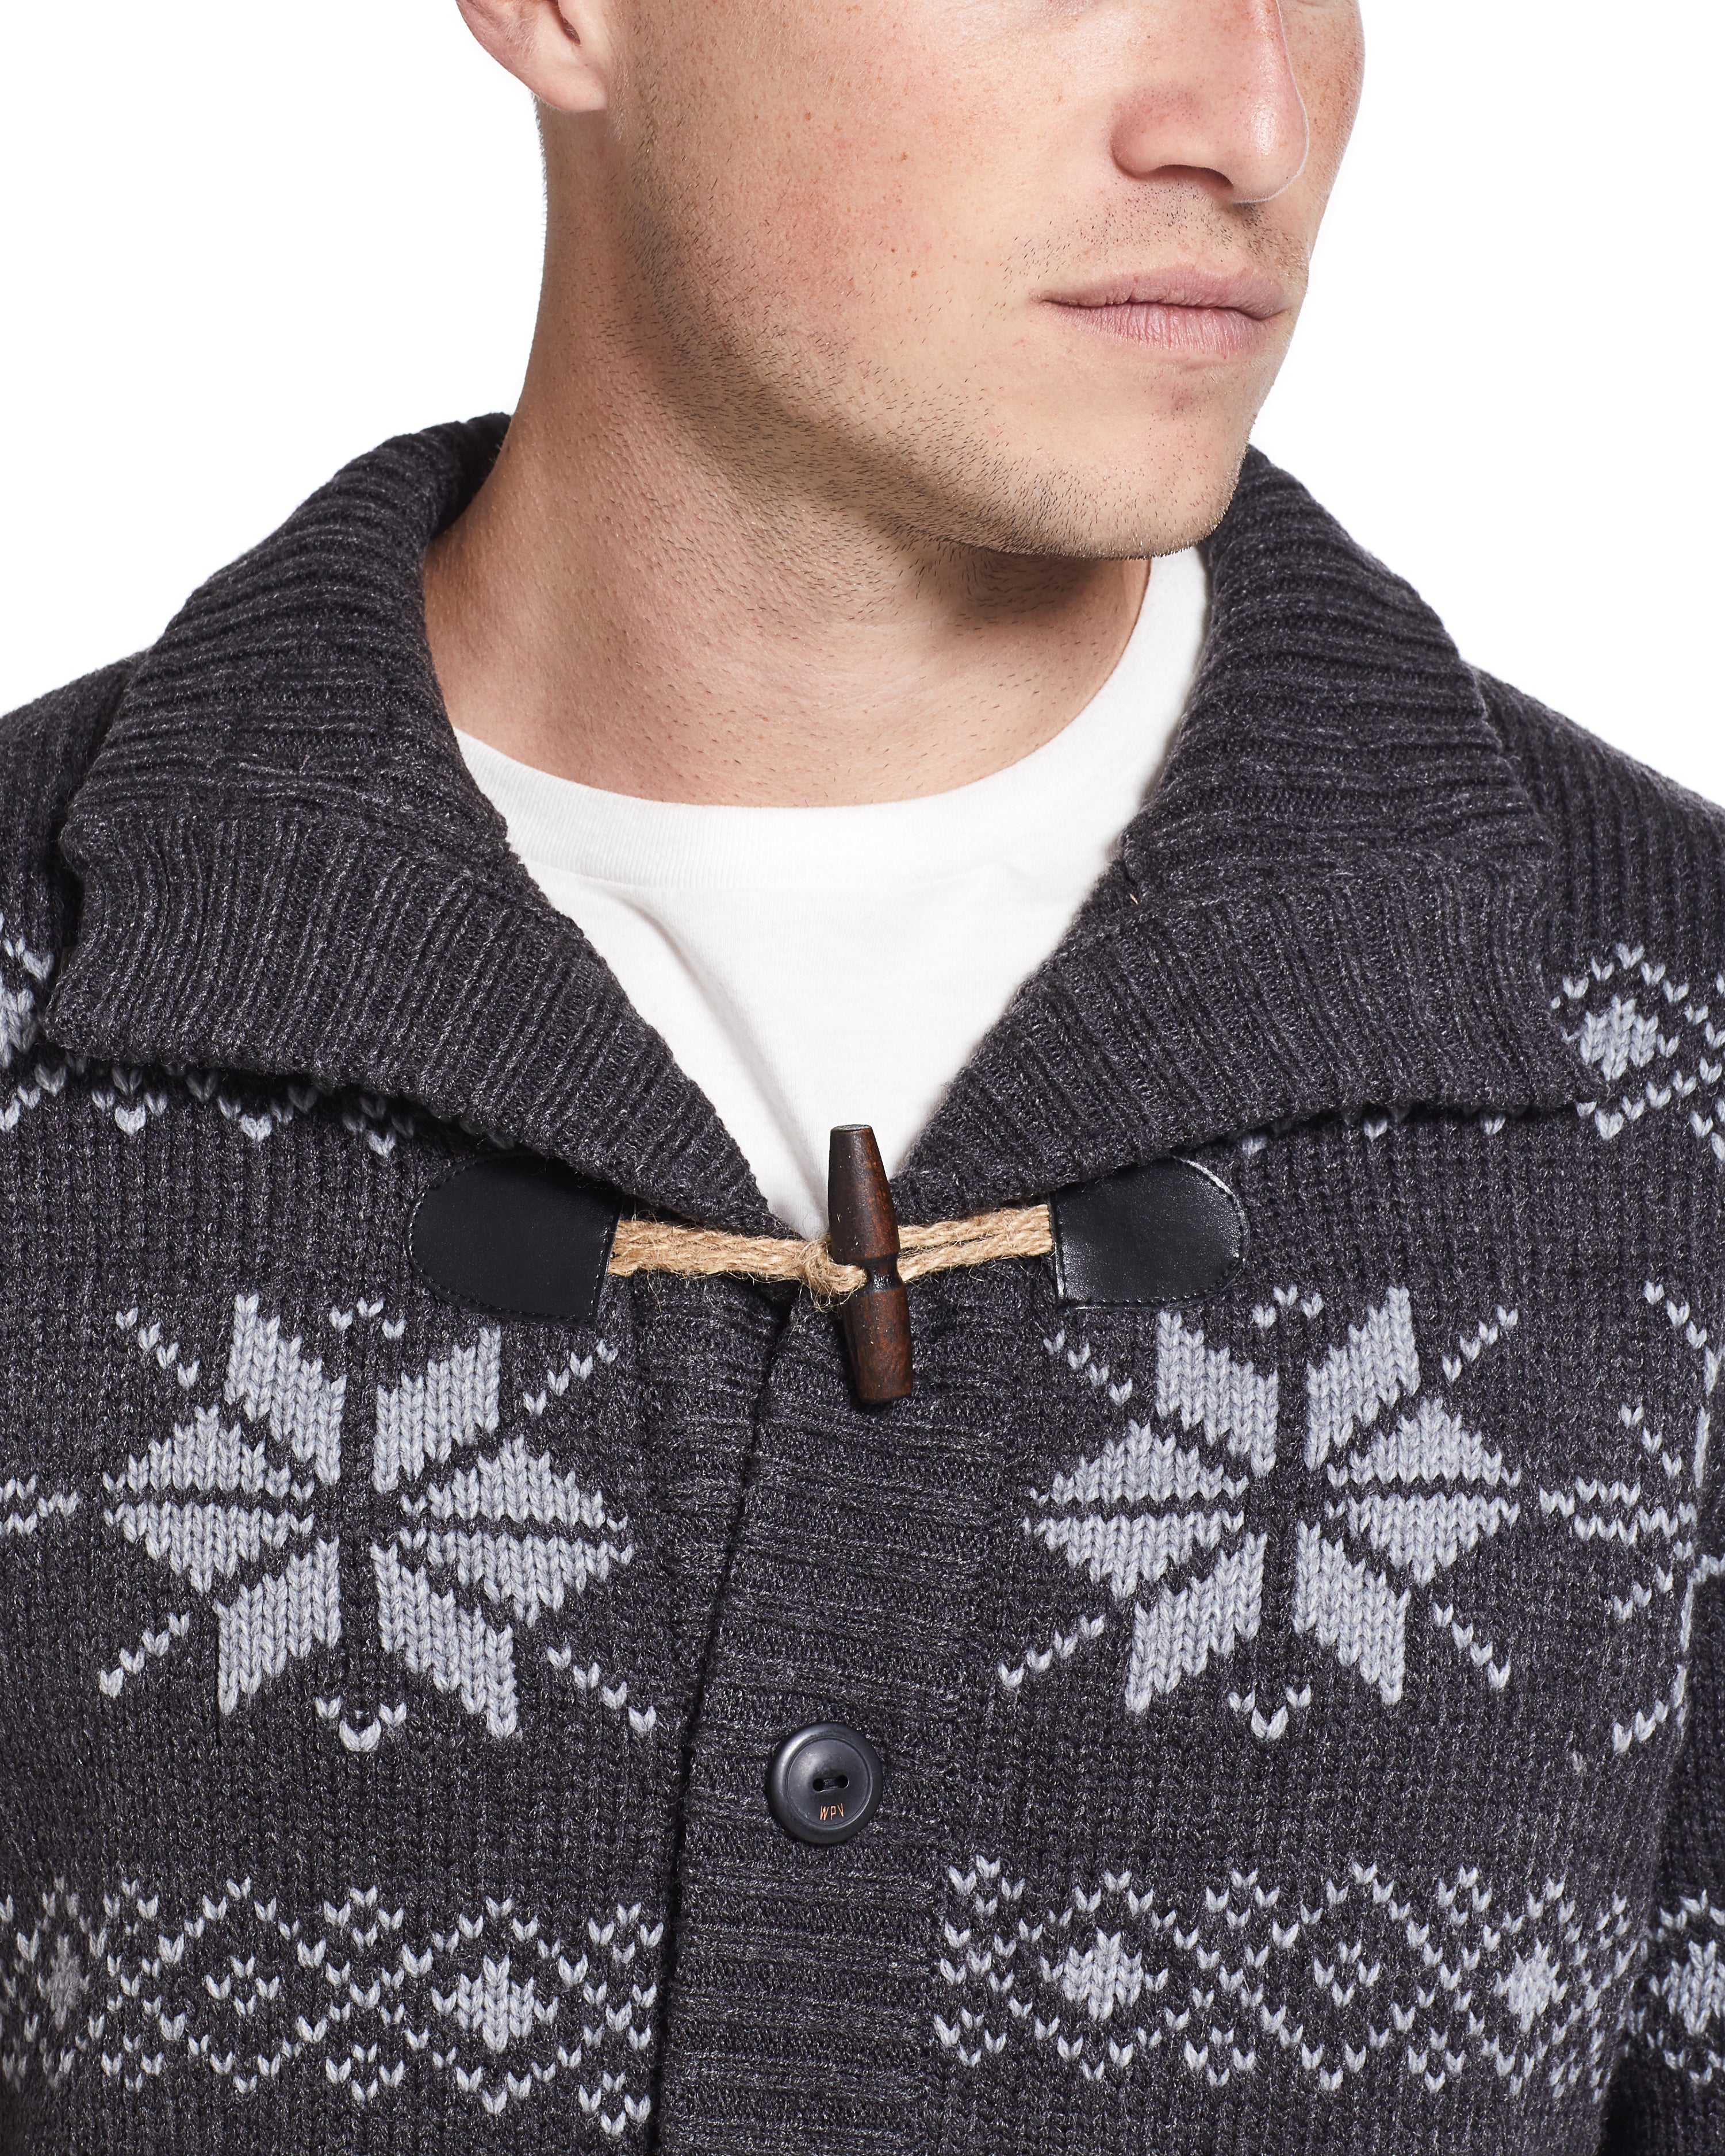 Snowflake Cardigan Sweater in Charcoal Heather